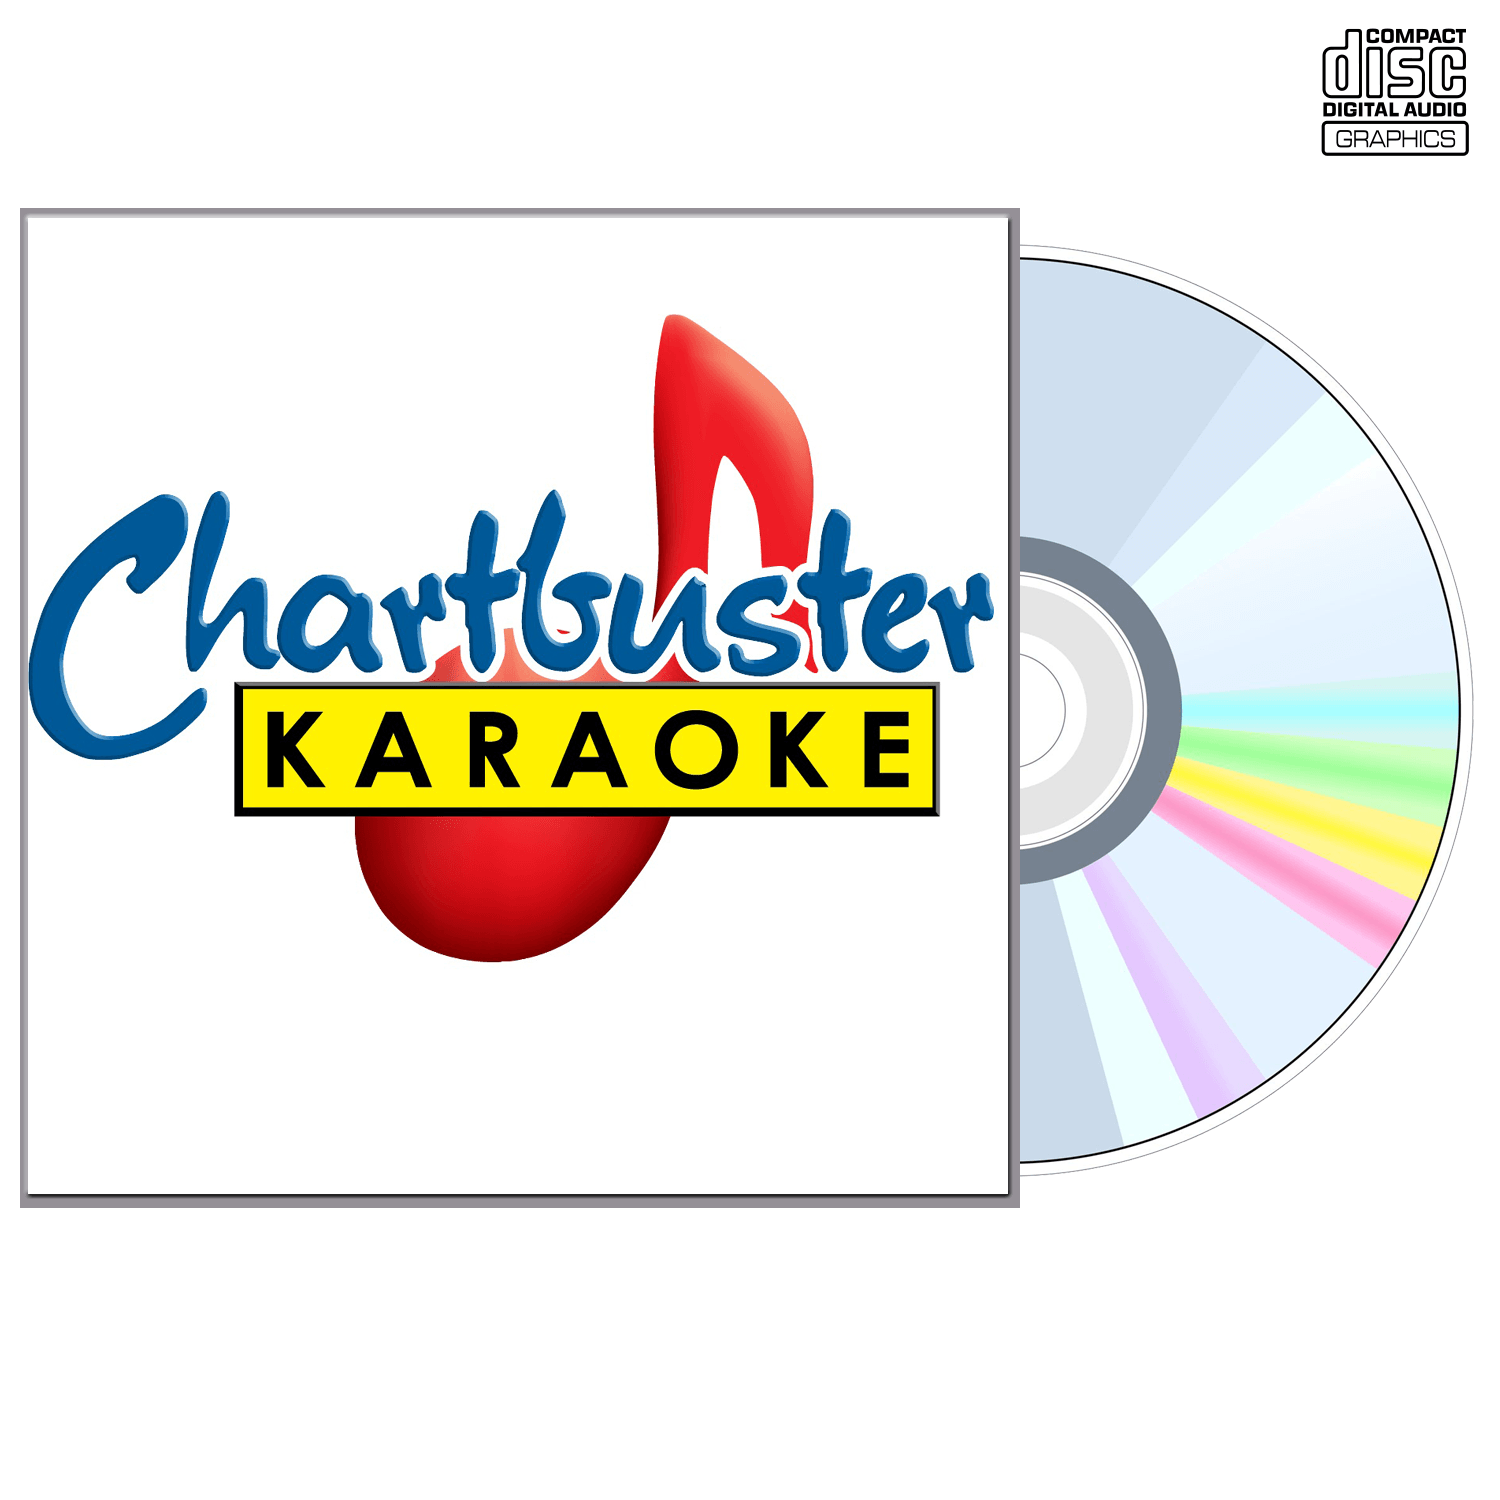 Mark Chestnutt Vol 3 - CD+G - Chartbuster Karaoke - Karaoke Home Entertainment